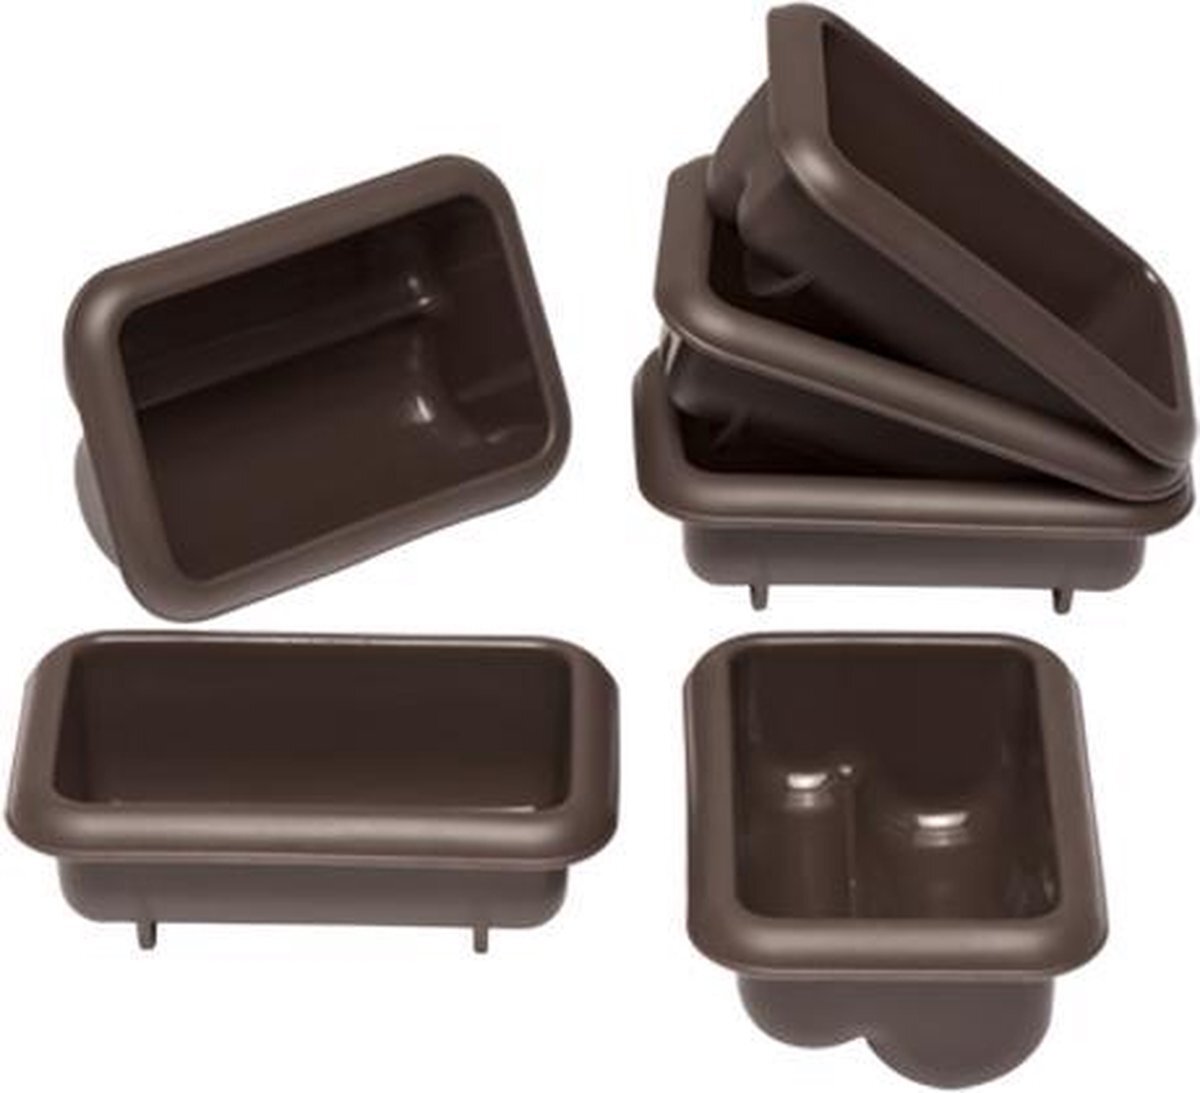 Lurch 85077 FlexiForm Mini Stollen set van 6 bakvormen voor 6 kleine noppen (9,1 x 5,6 x 3,9 cm) van 100% BPA-vrij platina siliconen